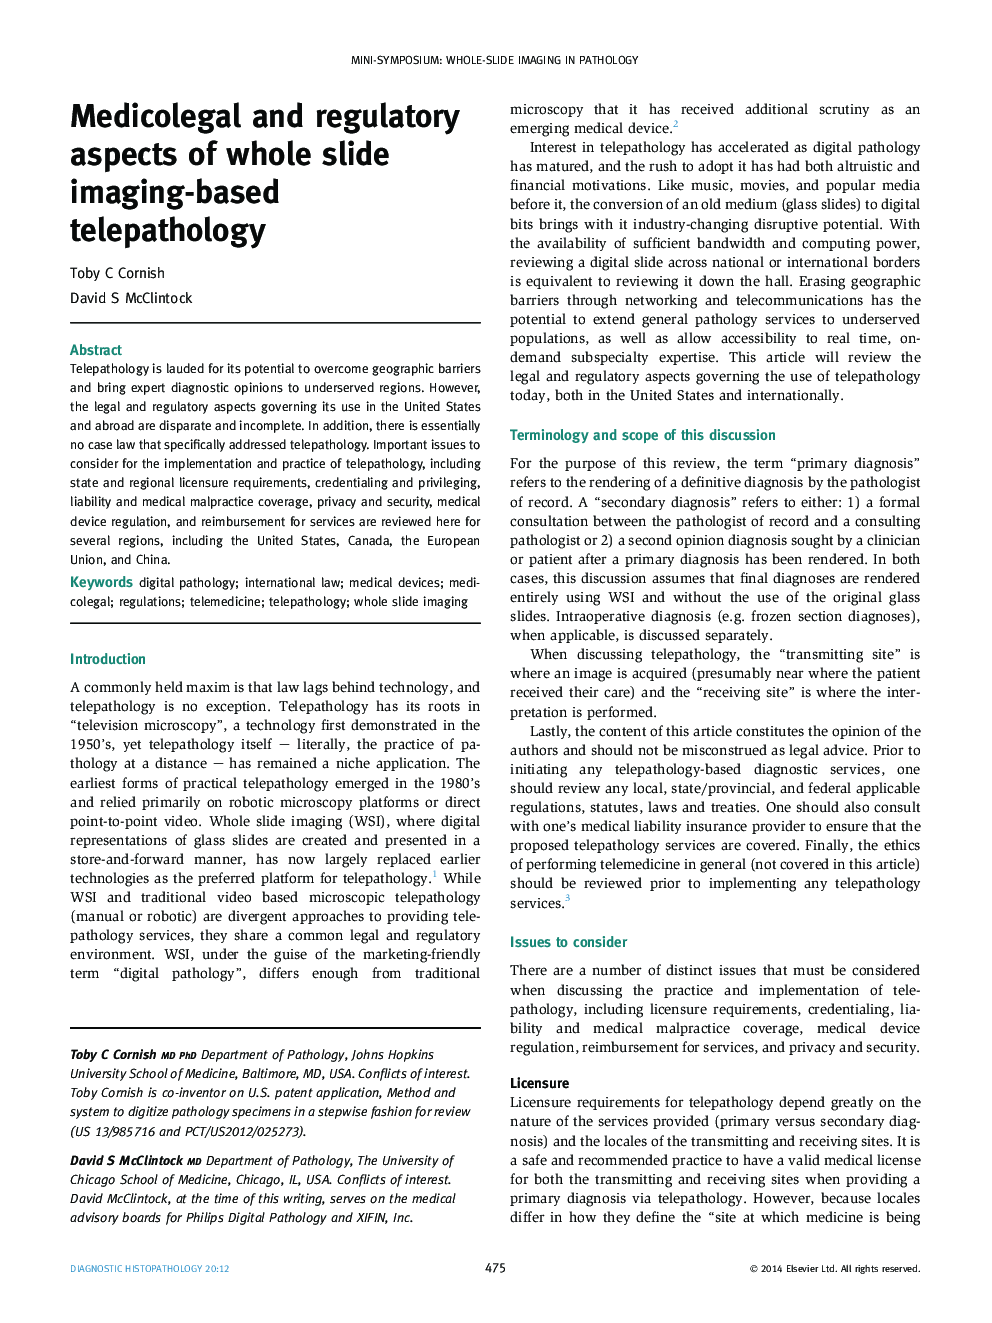 Medicolegal and regulatory aspects of whole slide imaging-based telepathology